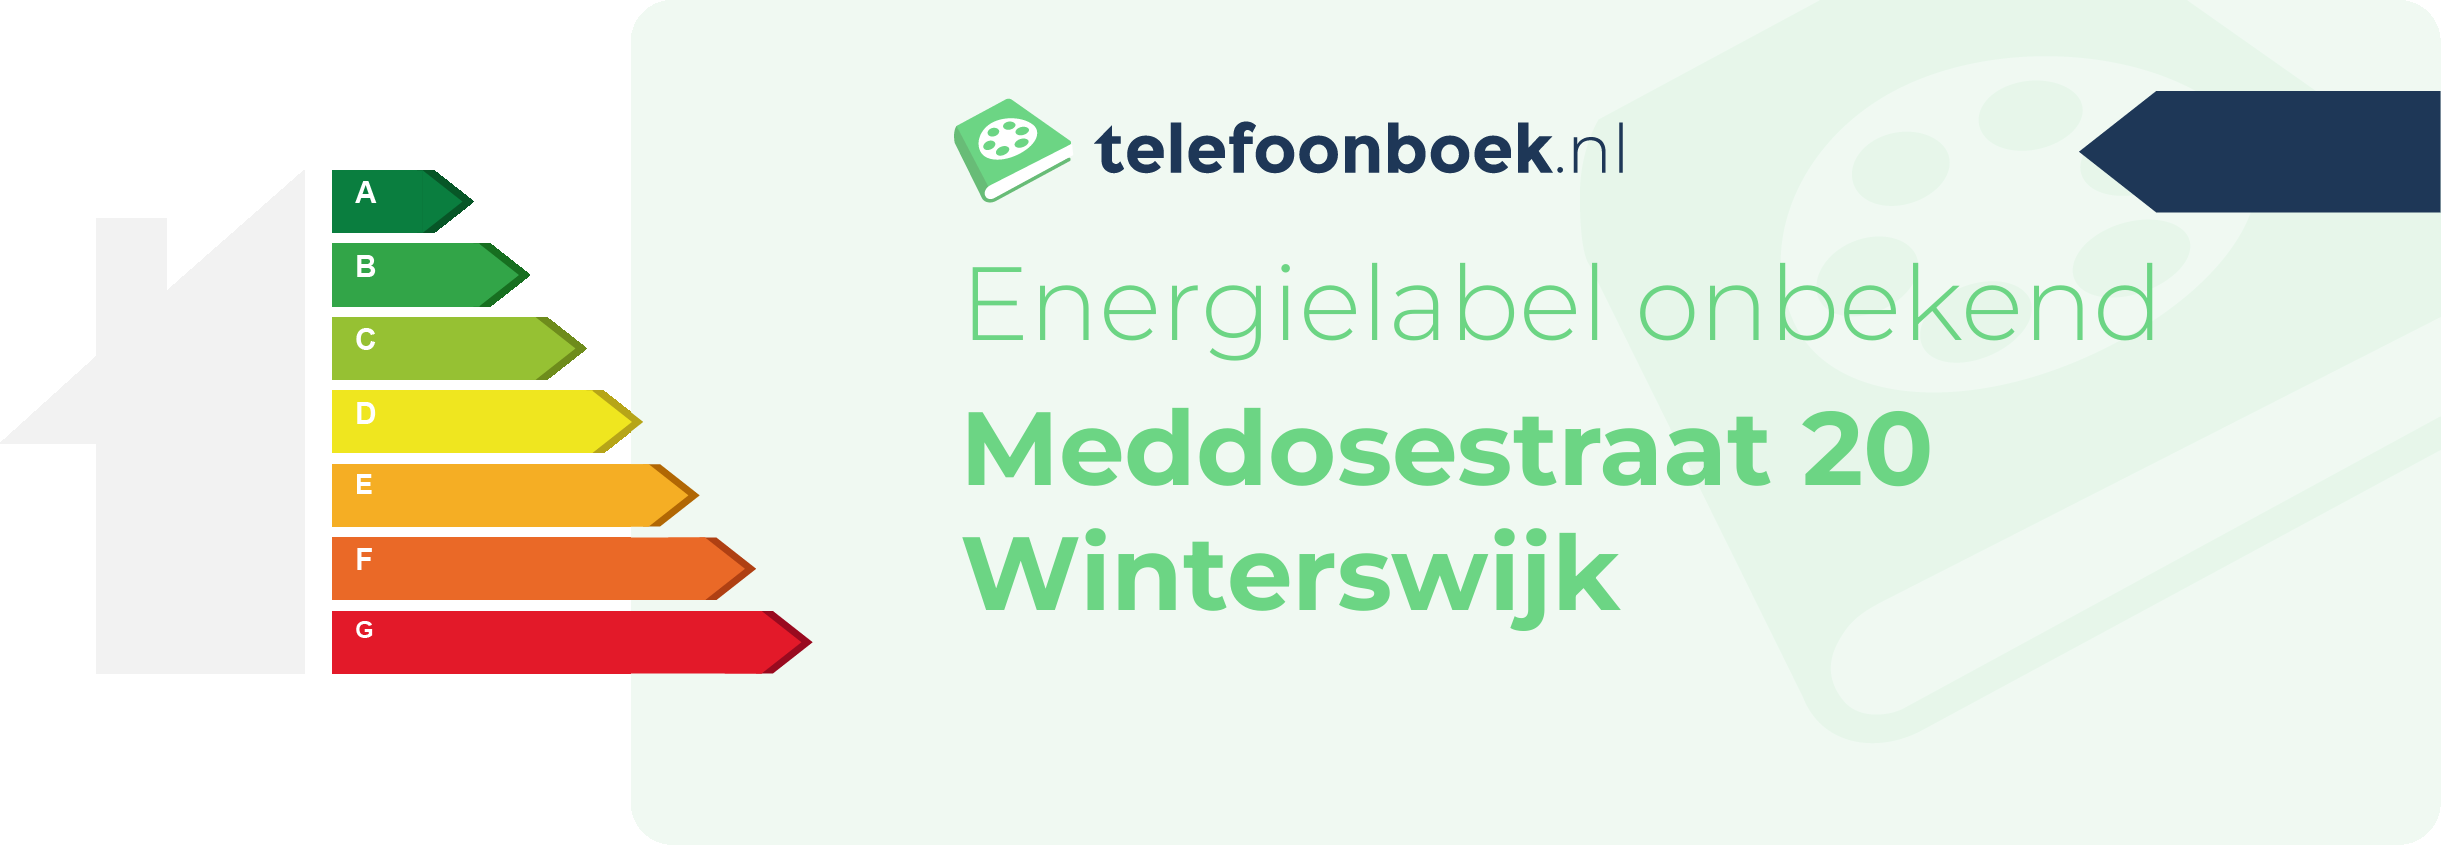 Energielabel Meddosestraat 20 Winterswijk